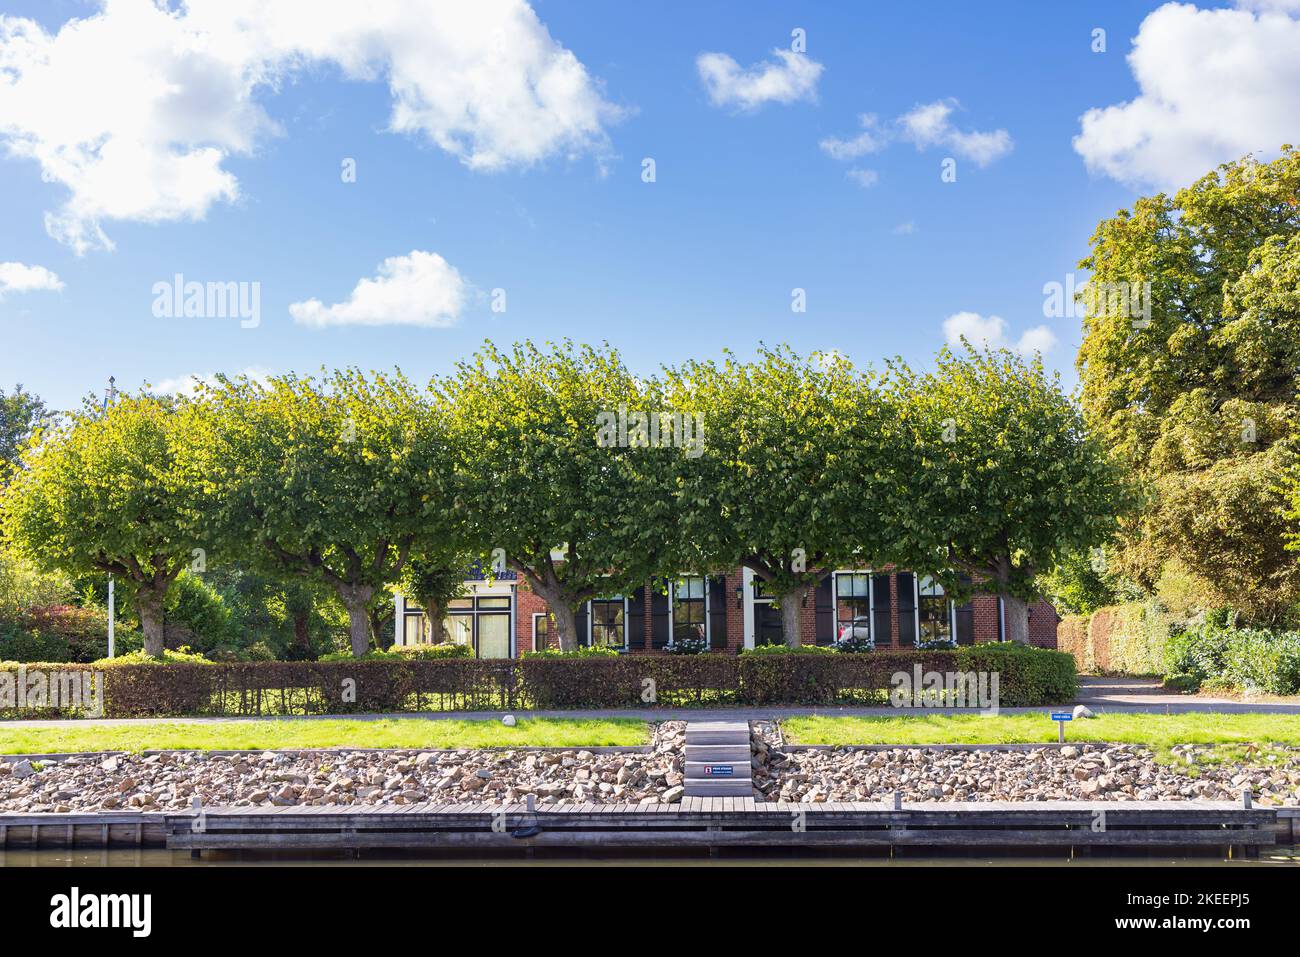 Panoramabilder des kleinen Dorfes Briltil, Gemeinde Westerkwartier in der Provinz Groningen in den Niederlanden Stockfoto